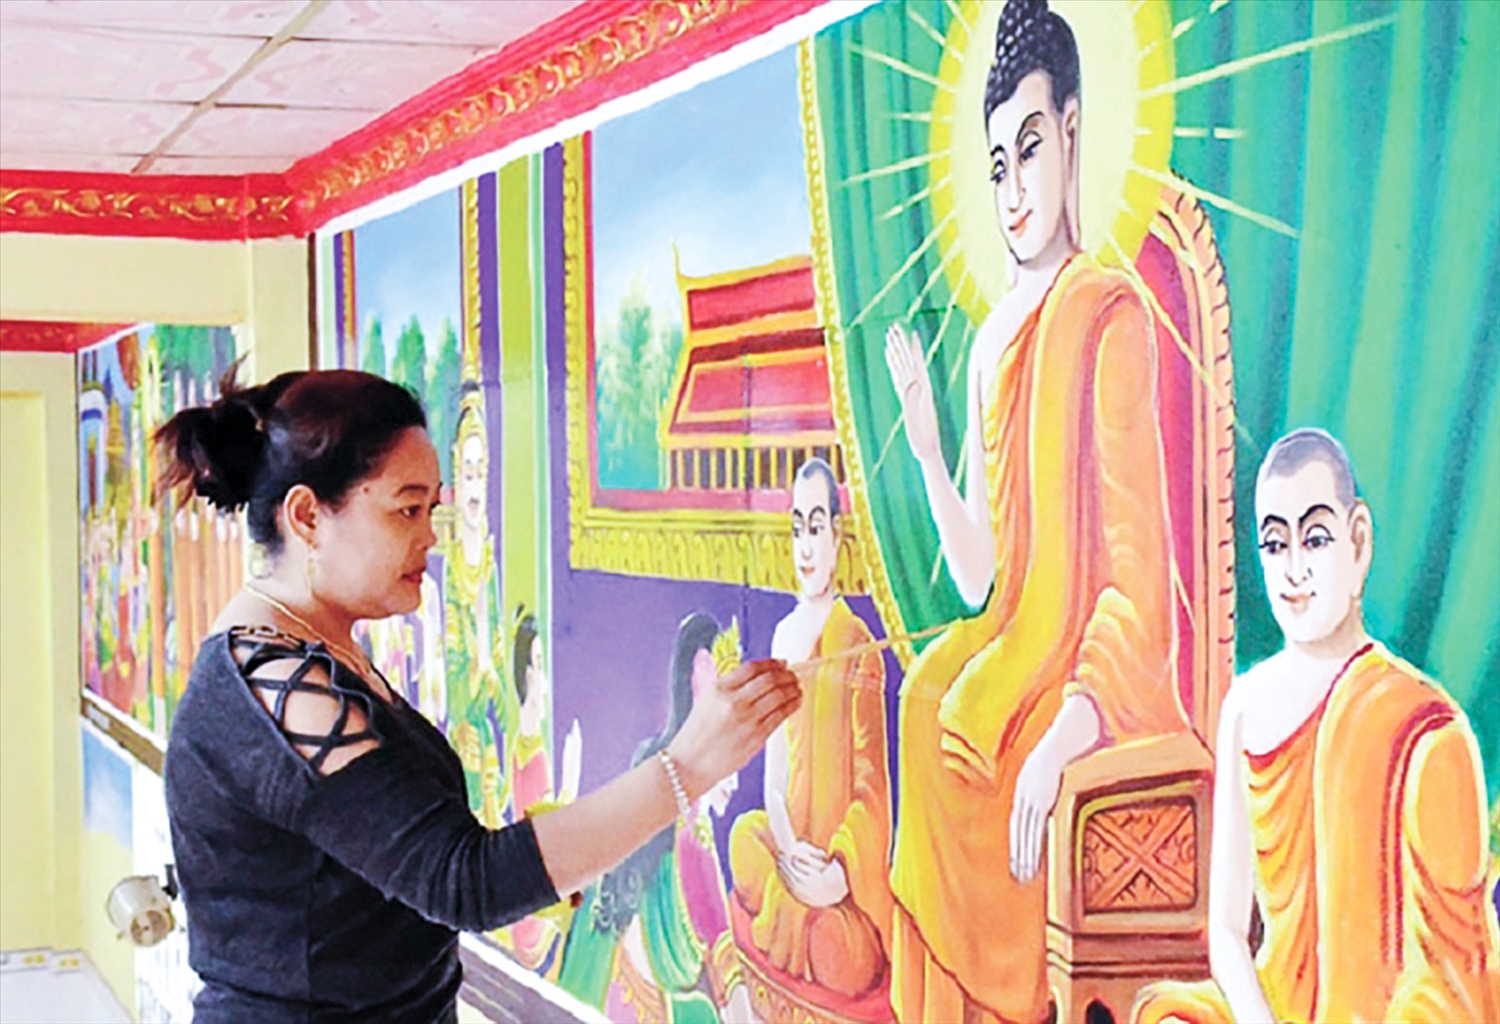 Nghệ nhân Sơn Trà The thực hiện bức tranh tường về cuộc đời Đức Phật trong một ngôi chùa ở Sóc Trăng